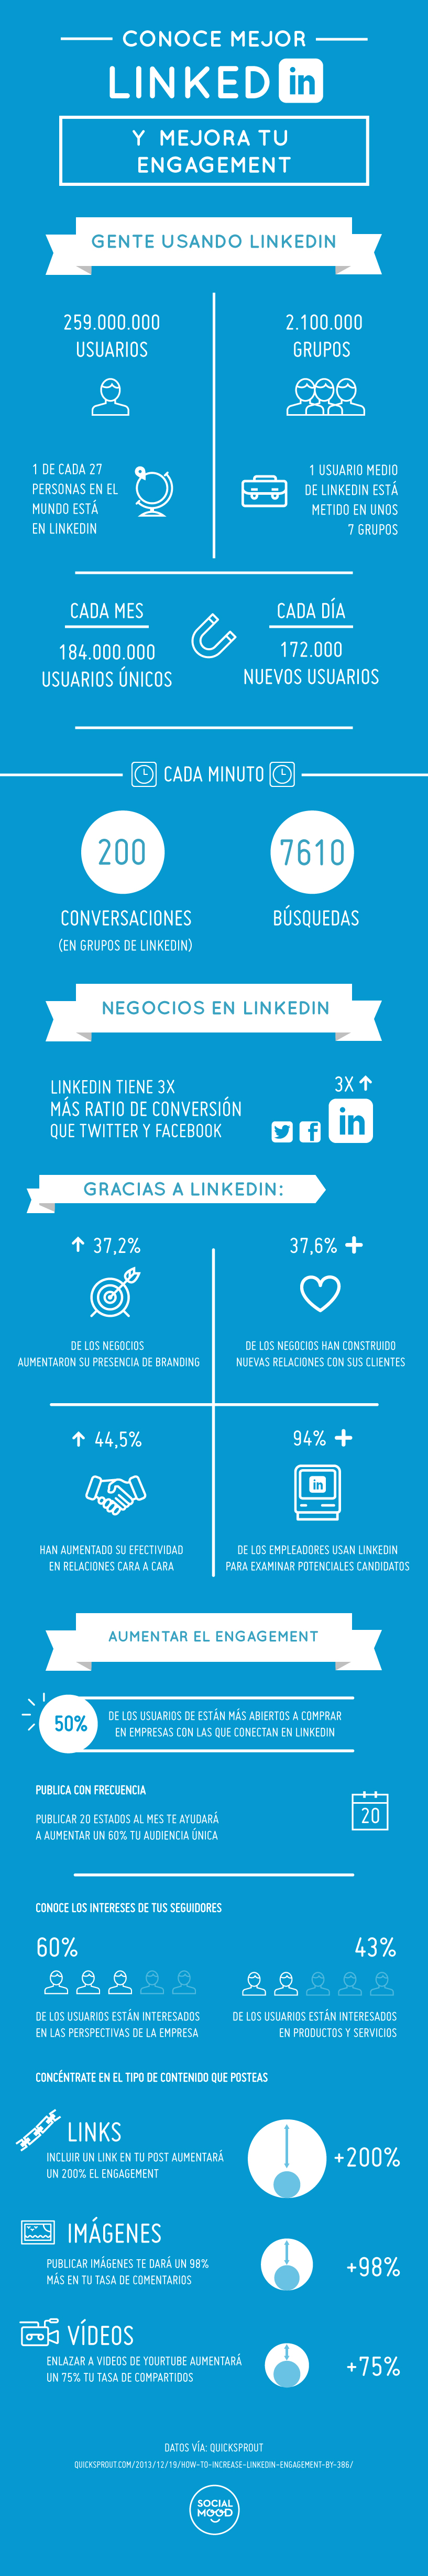 ¿Cómo mejorar tu llegada en LinkedIn? - Infografía